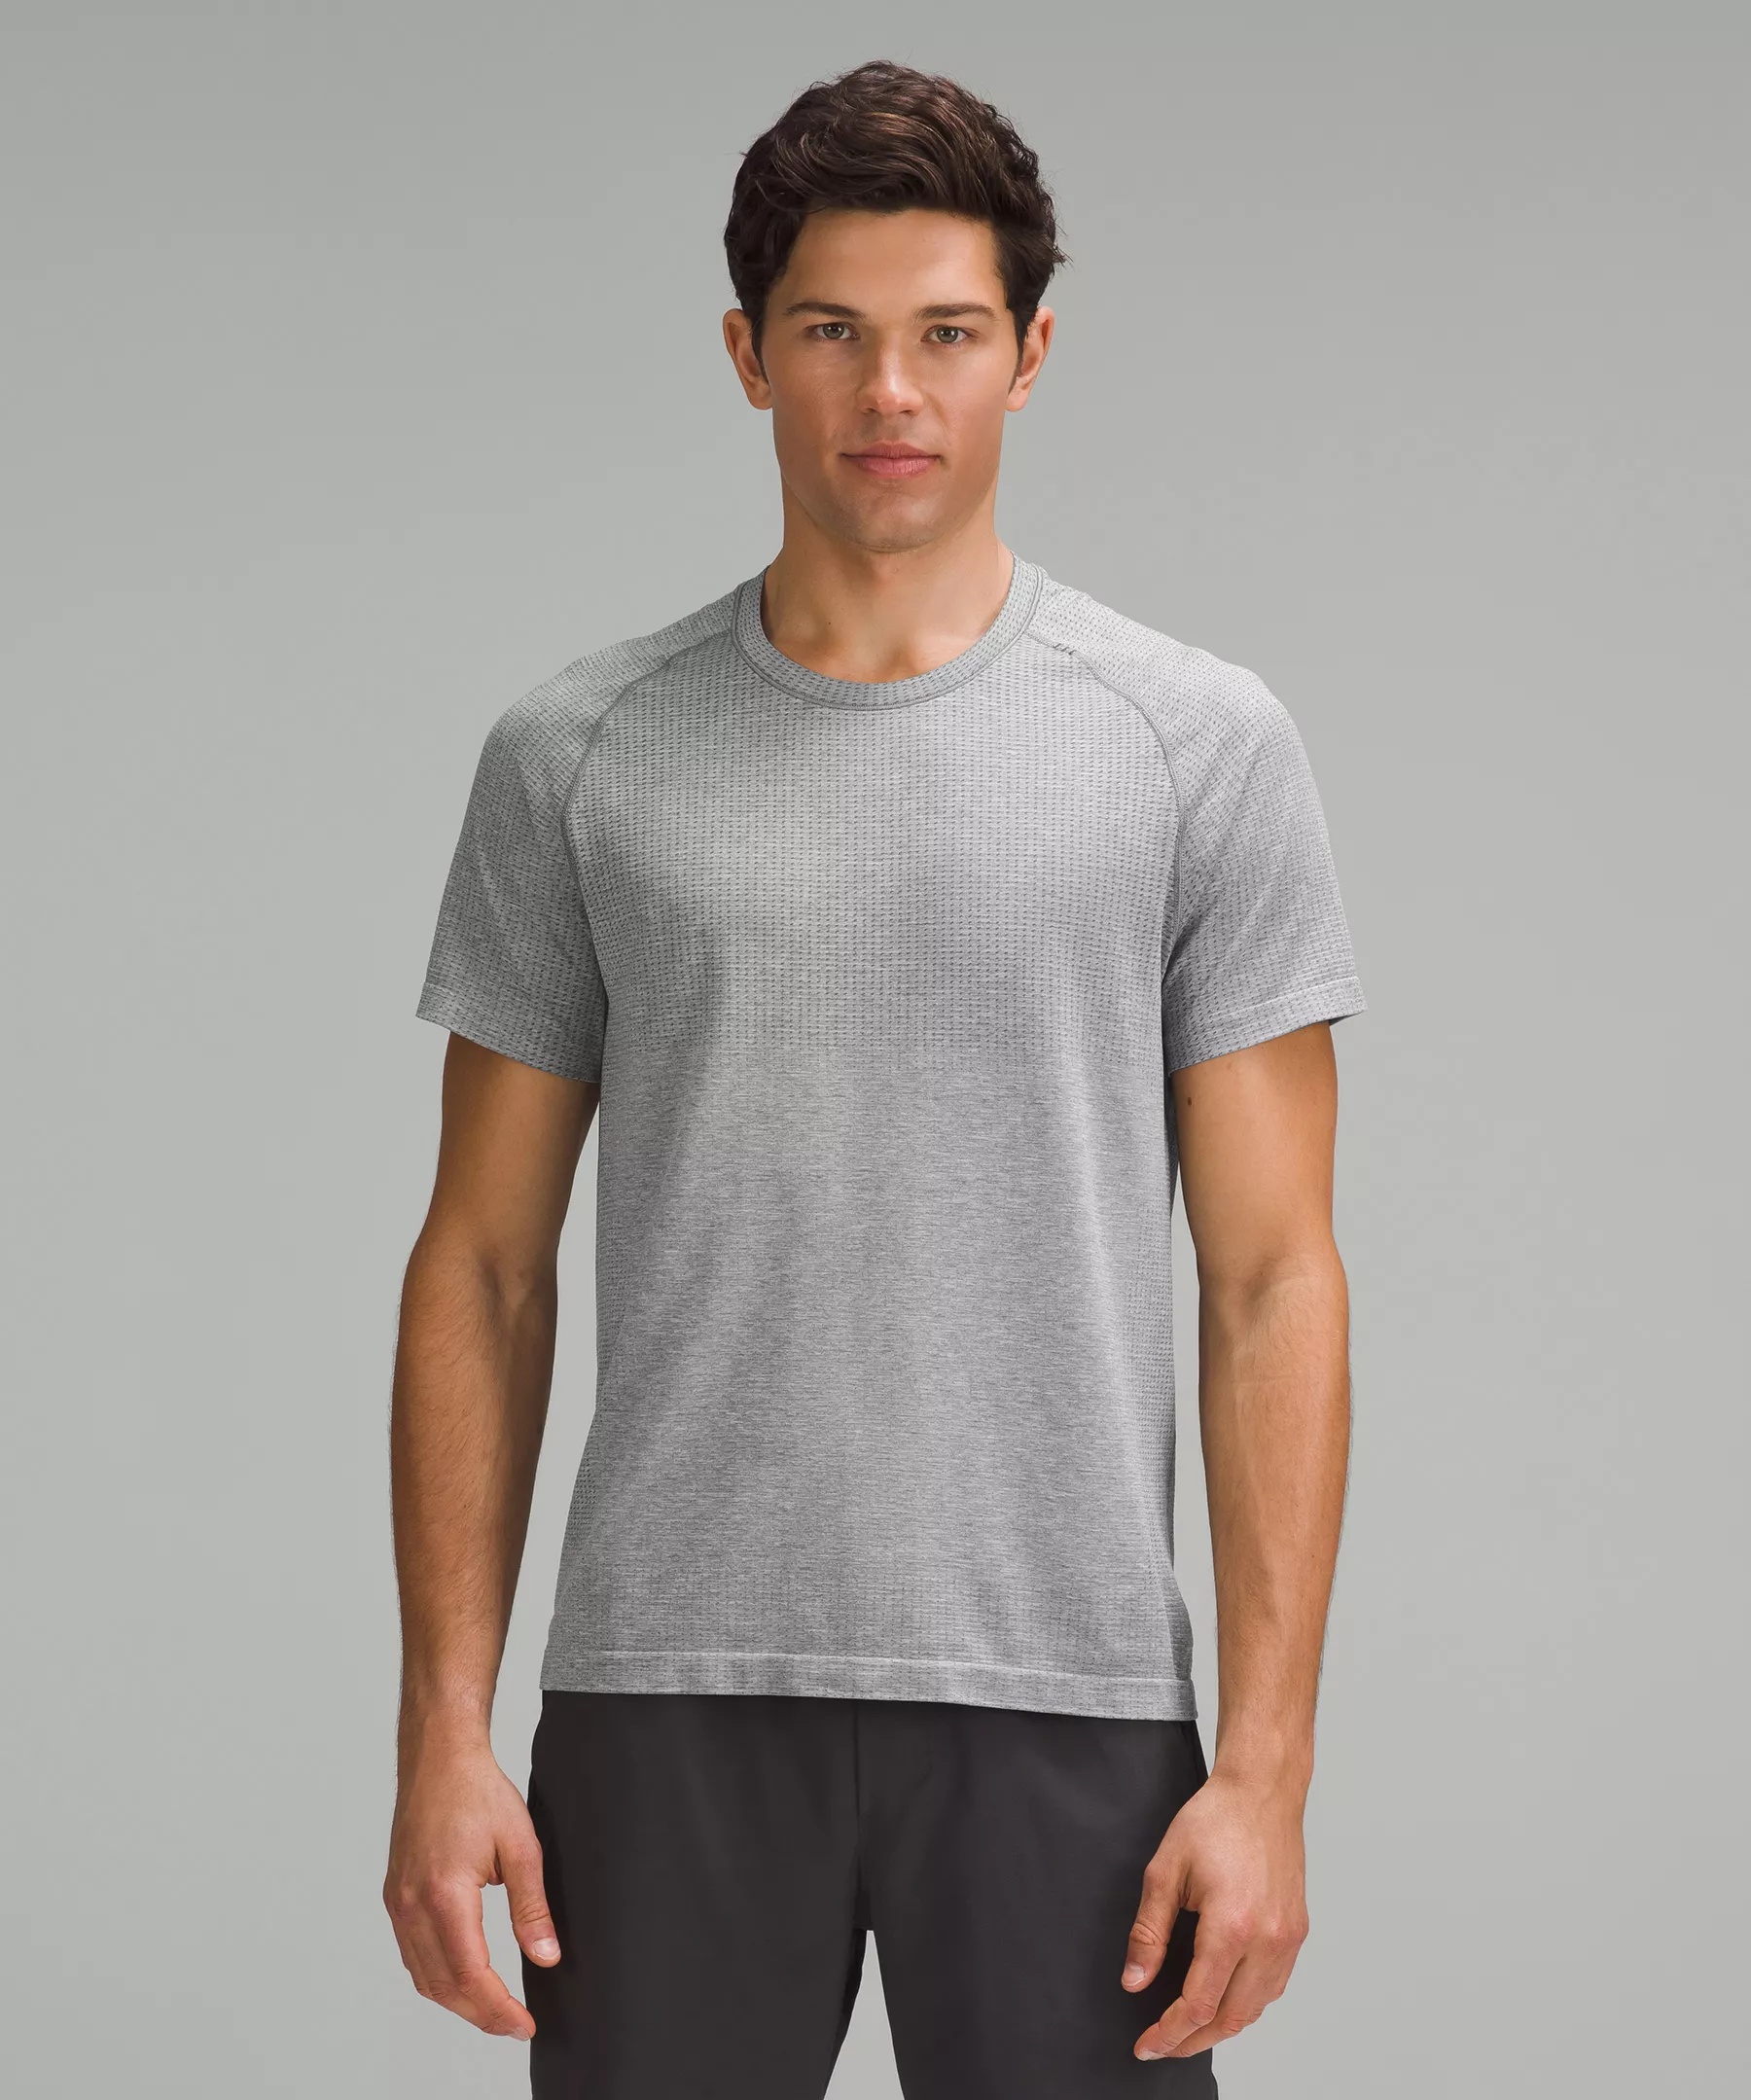 Metal Vent Tech Short-Sleeve Shirt *Updated Fit - 1